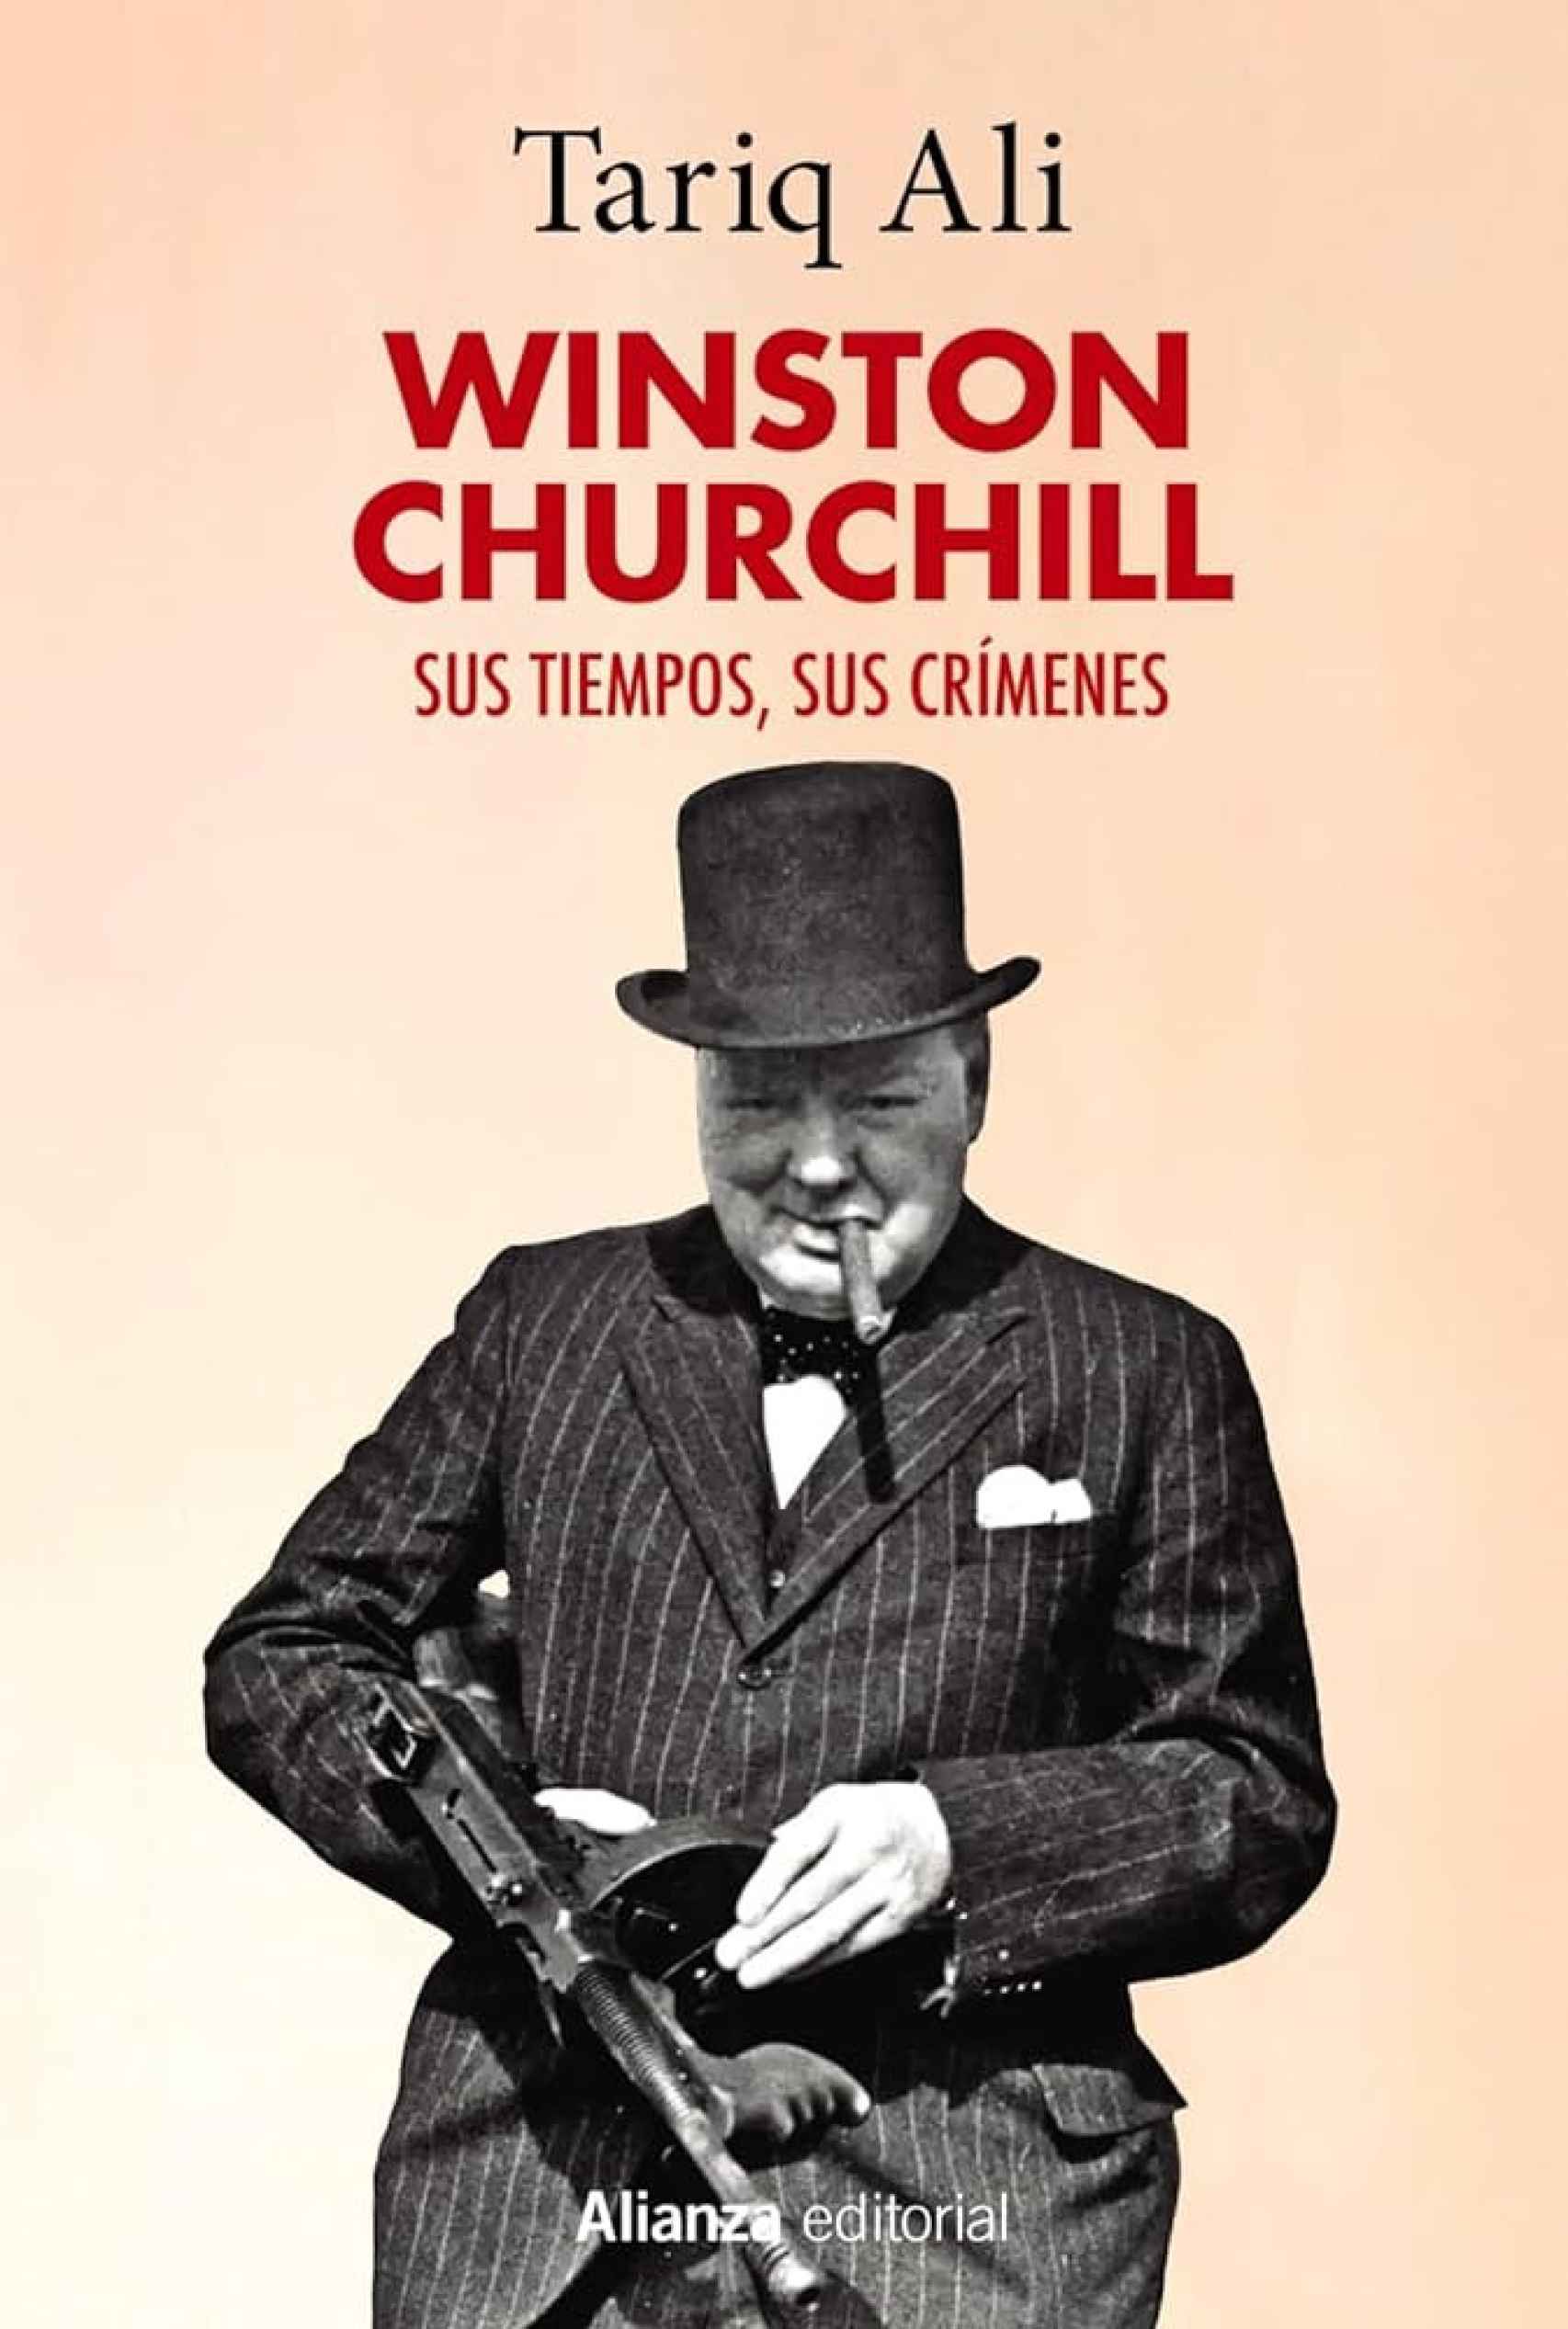 Winston Churchill, sus tiempos, sus crímenes